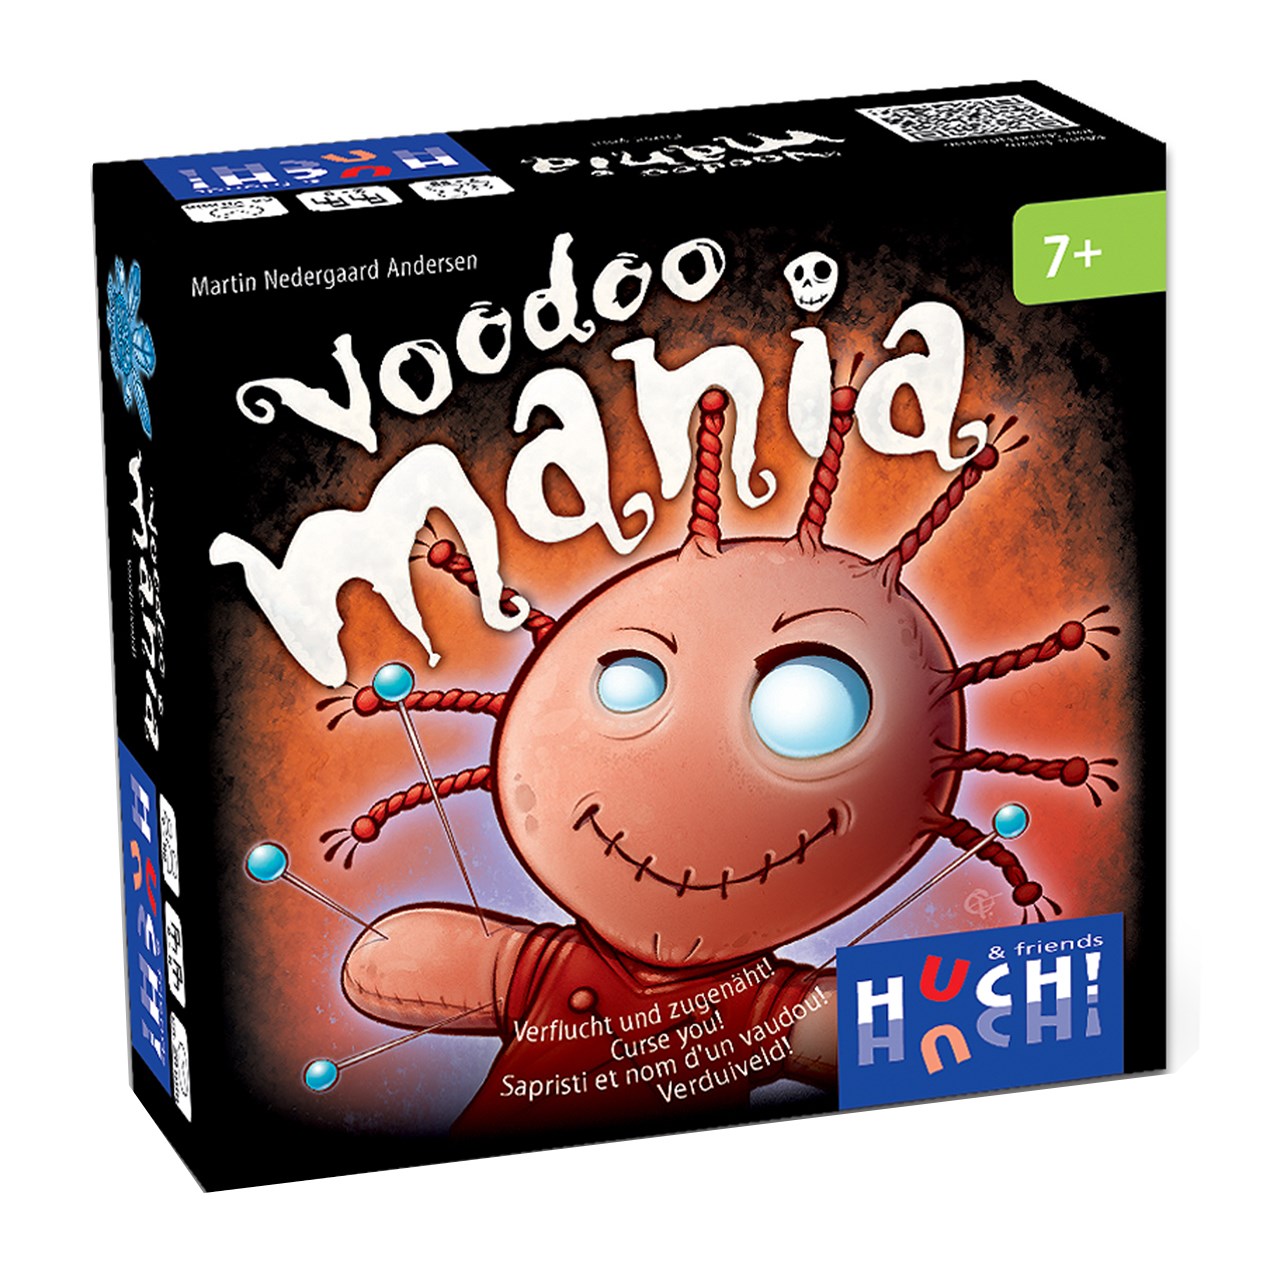 بازی فکری هوچی فرندز مدل Voodoo Mania